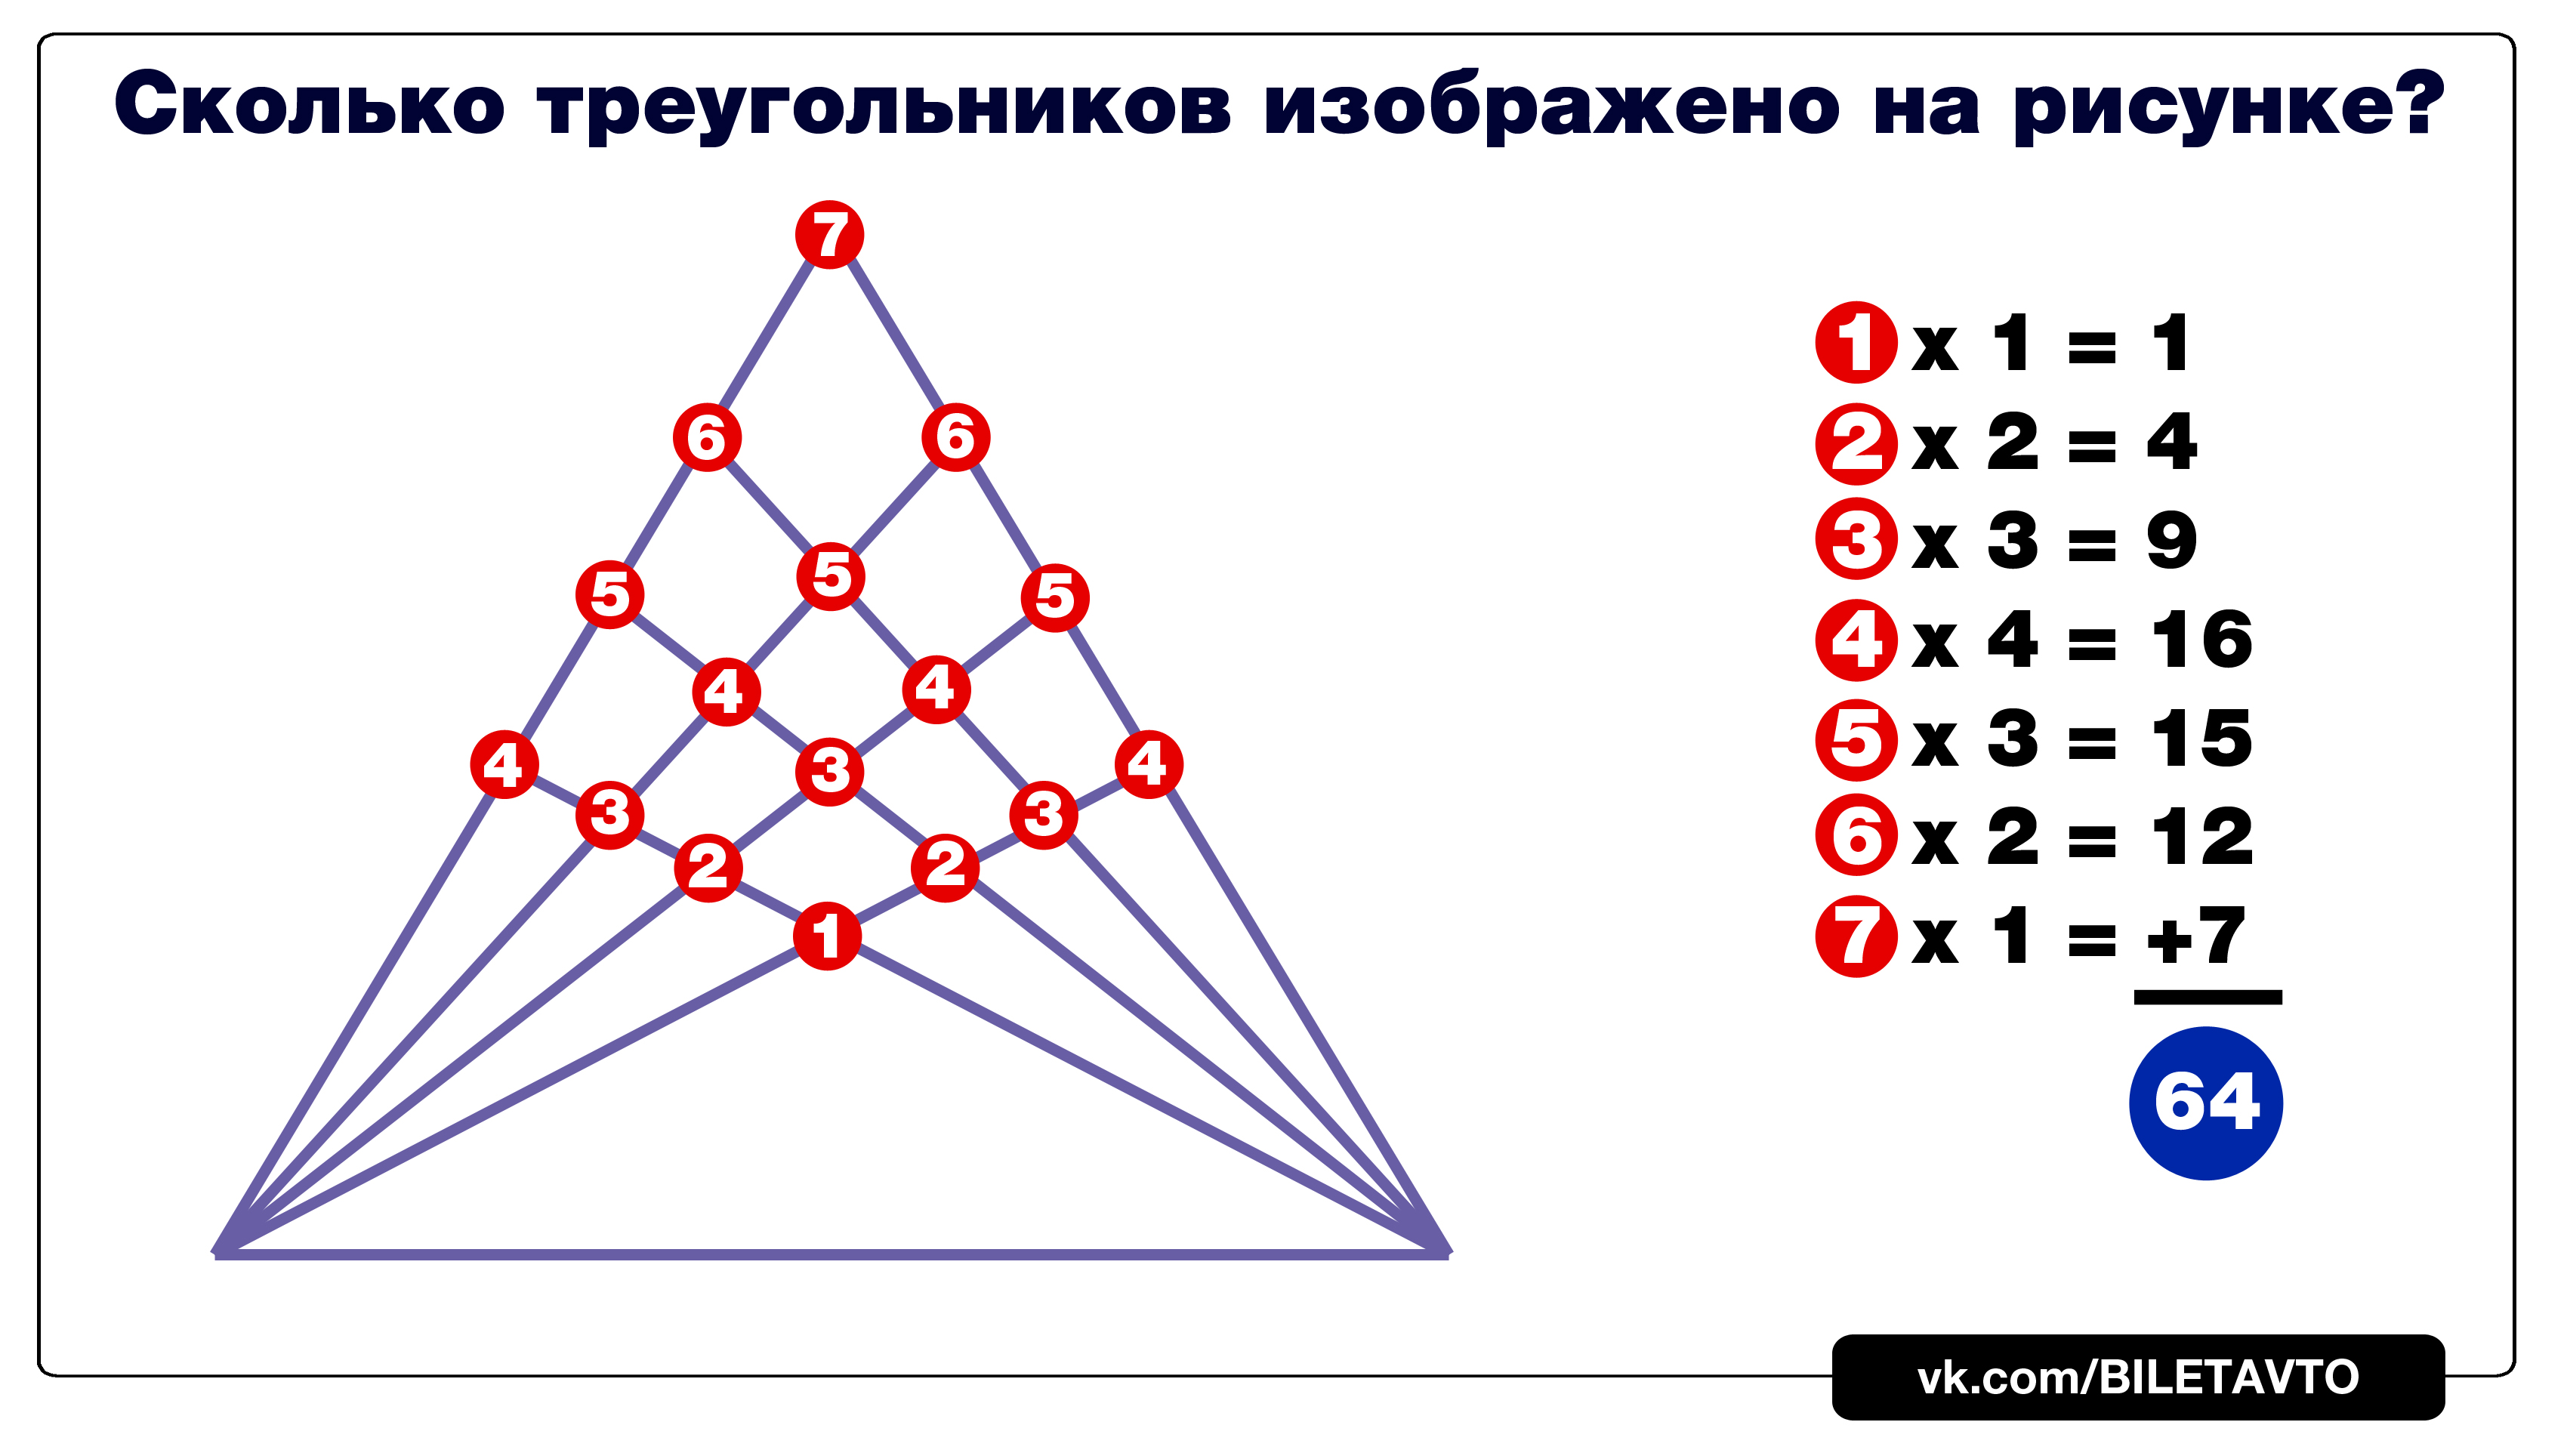 Ответ на задачу про треугольники